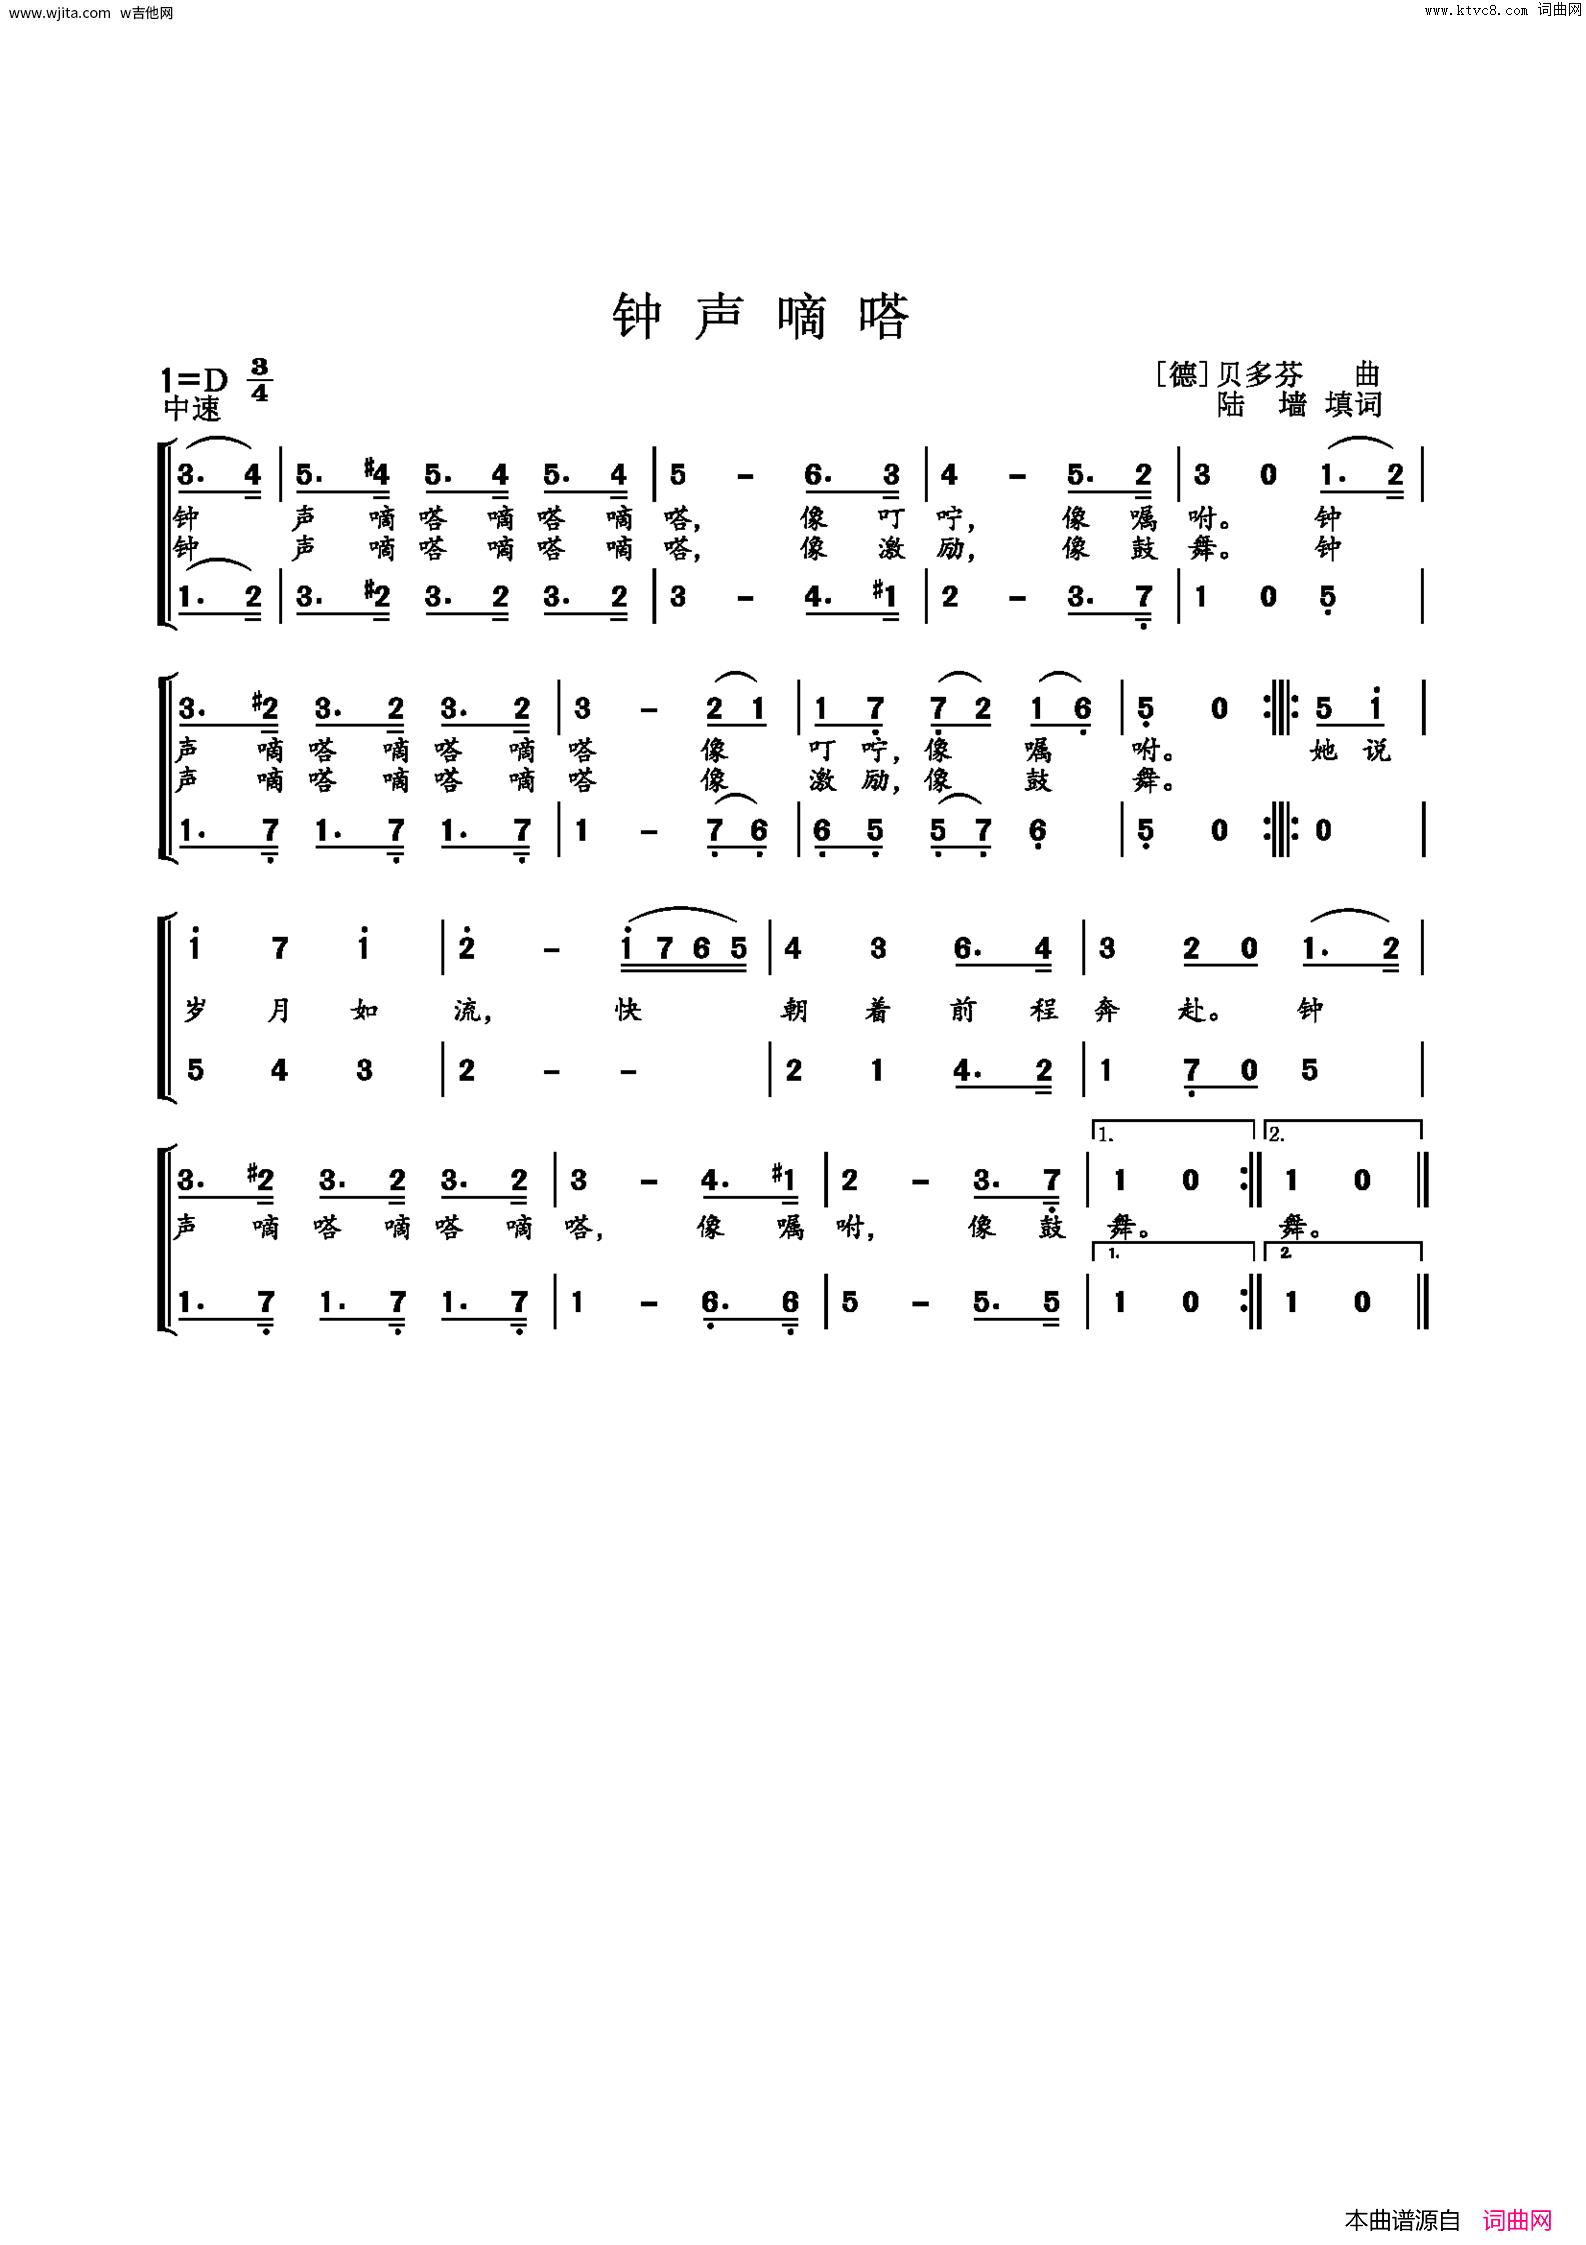 8-1弹唱《嘀嗒》学习小横按和弦【福艺吉他入门课程2.0版】 - 嗨吉他